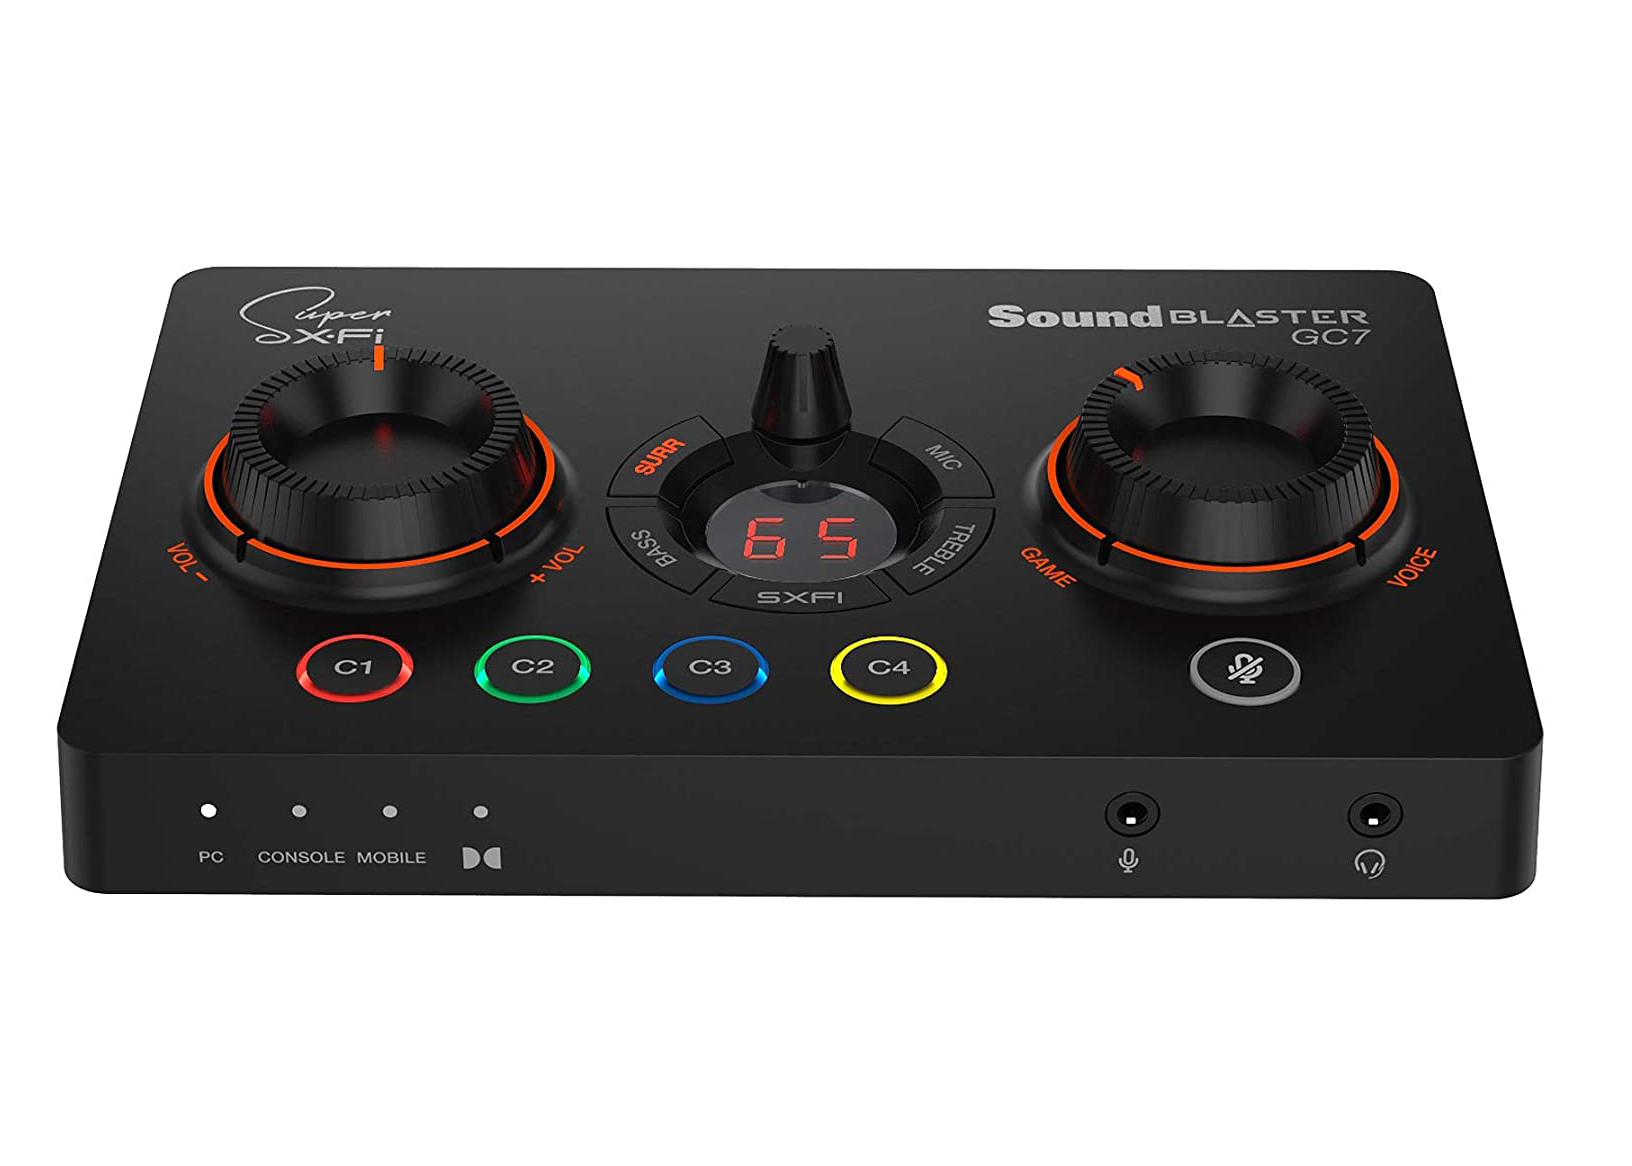 Creative Sound Blaster GC7 Game Streaming DAC Amp SB1850 Black - US